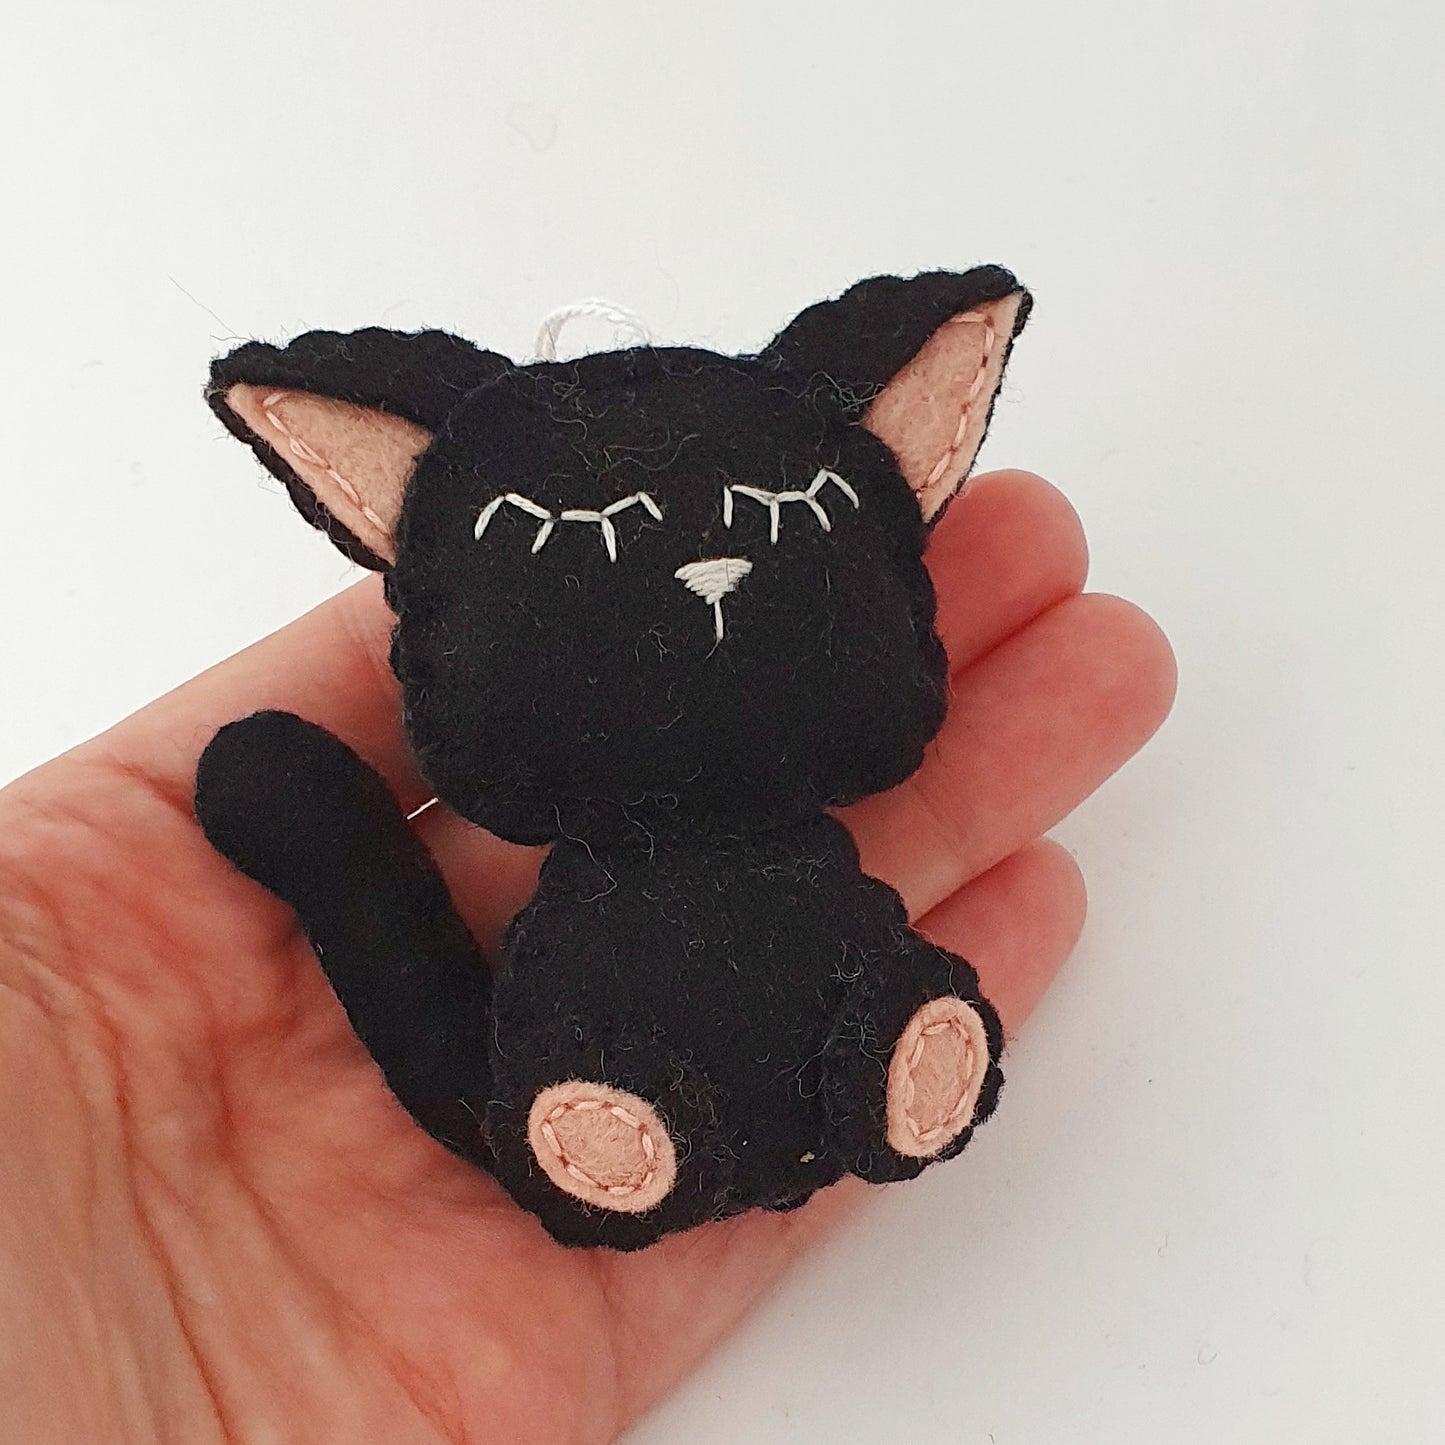 Black cat ornament, felt kitty decoration, wool cat ornament